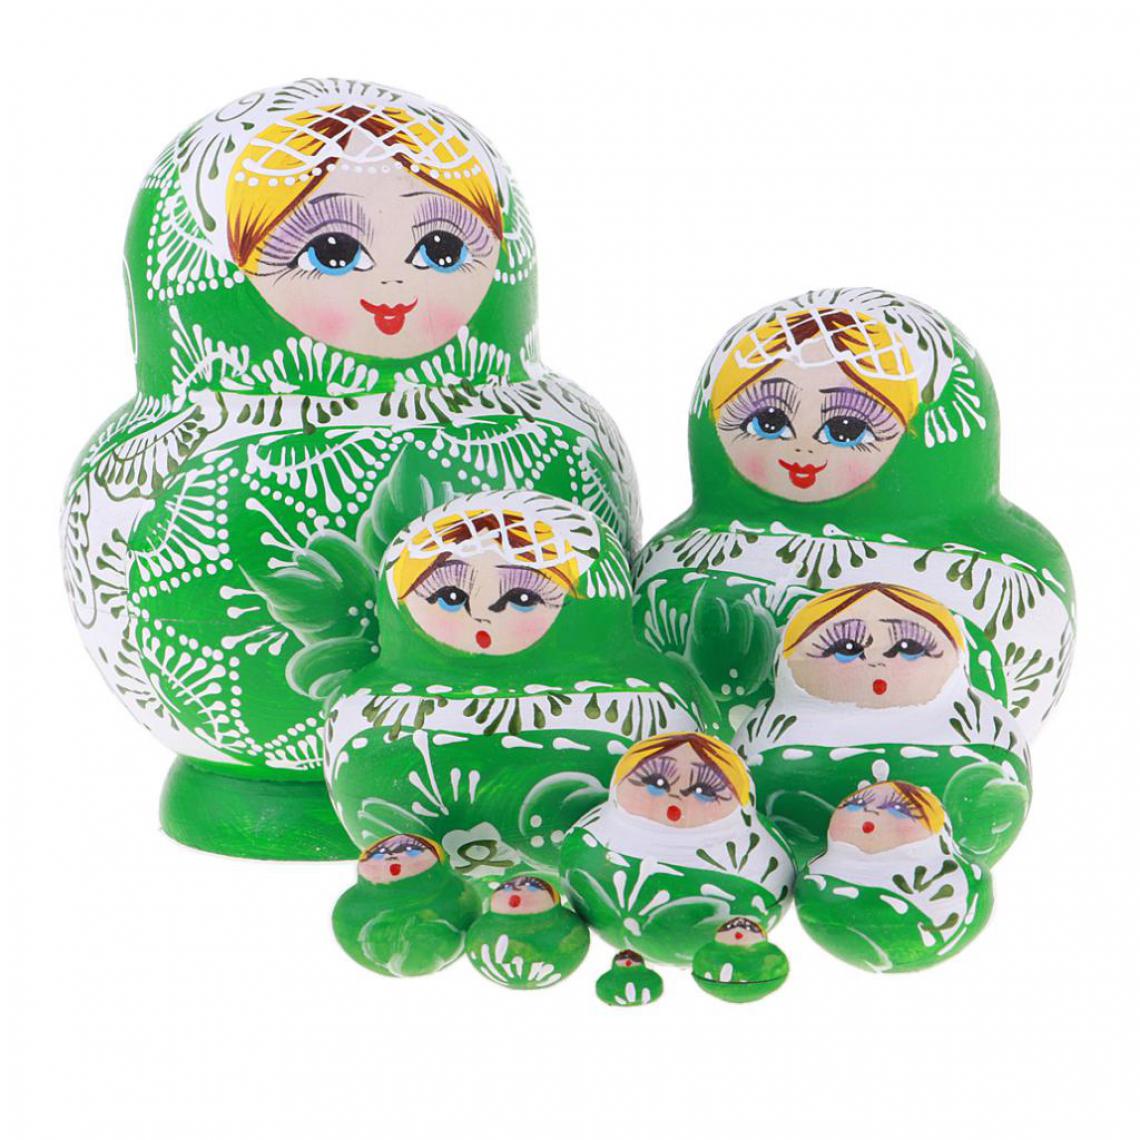 marque generique - filles adorables en bois poupées gigognes russes babushka matryoshka jouets bleu - Poupons